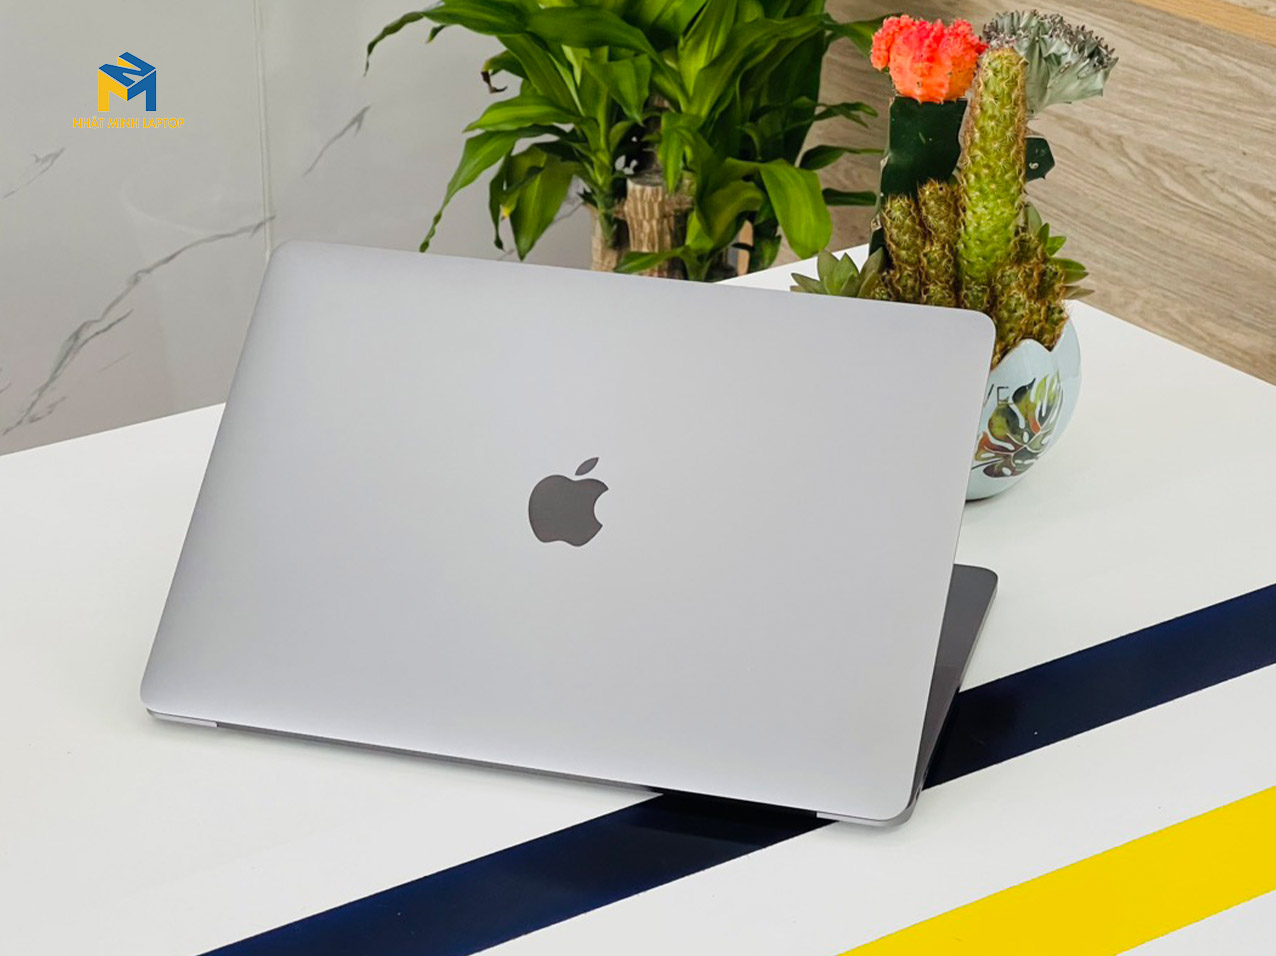 Macbook Pro 13-inch 2017 